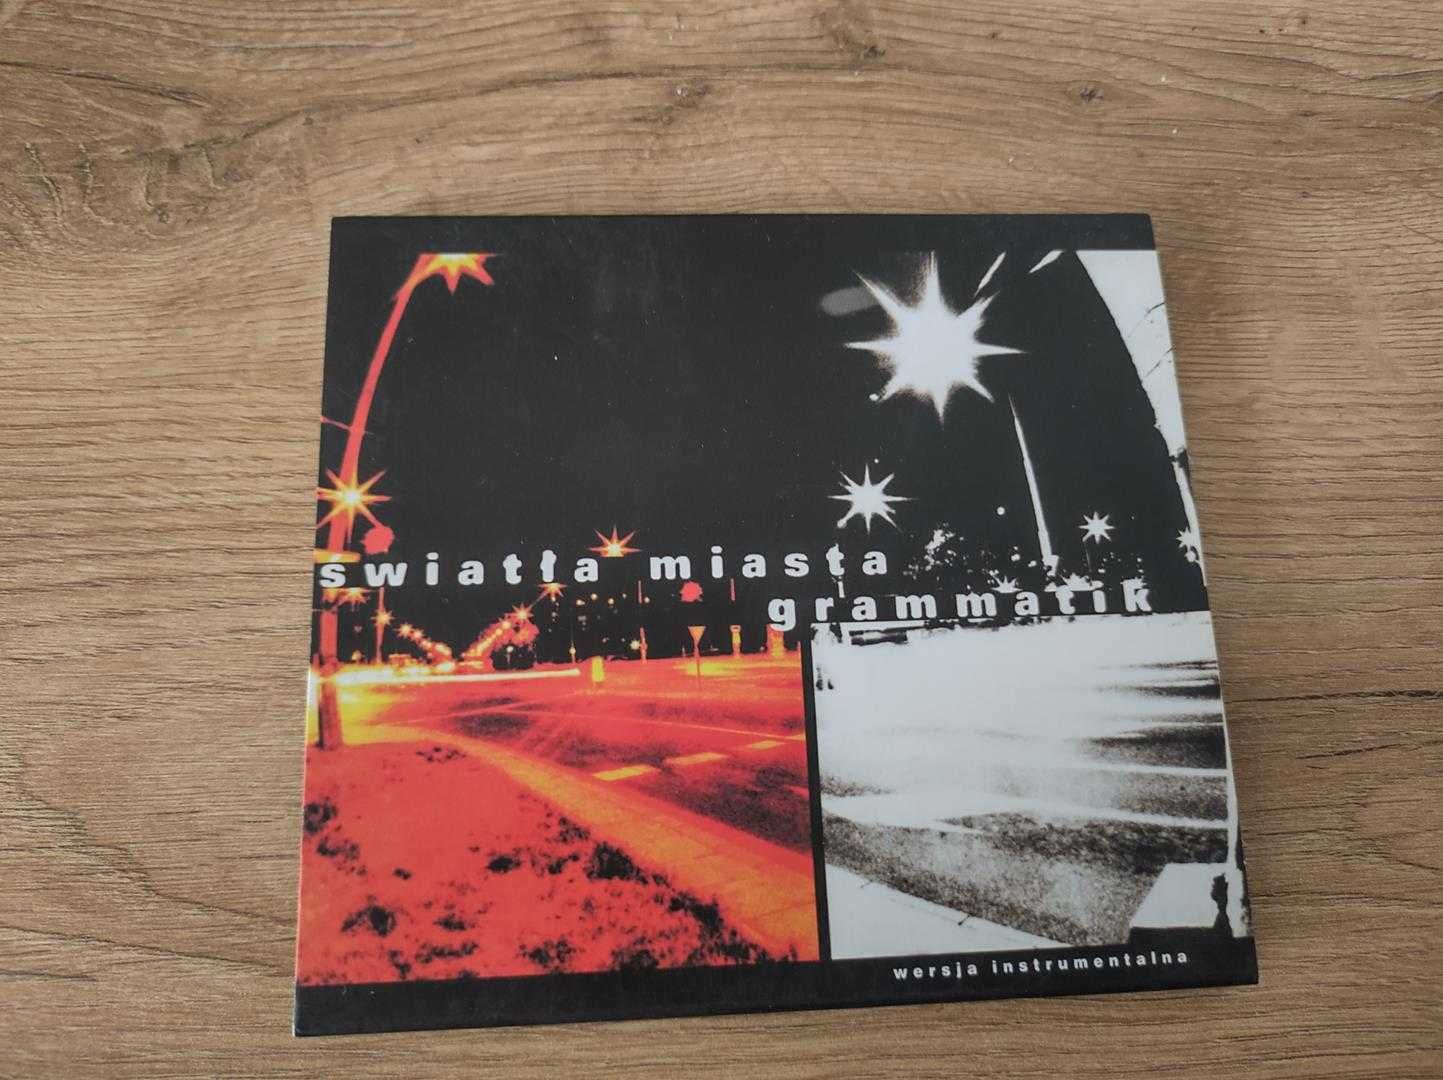 CD - Grammatik Światła miasta- wersja instrumentalna